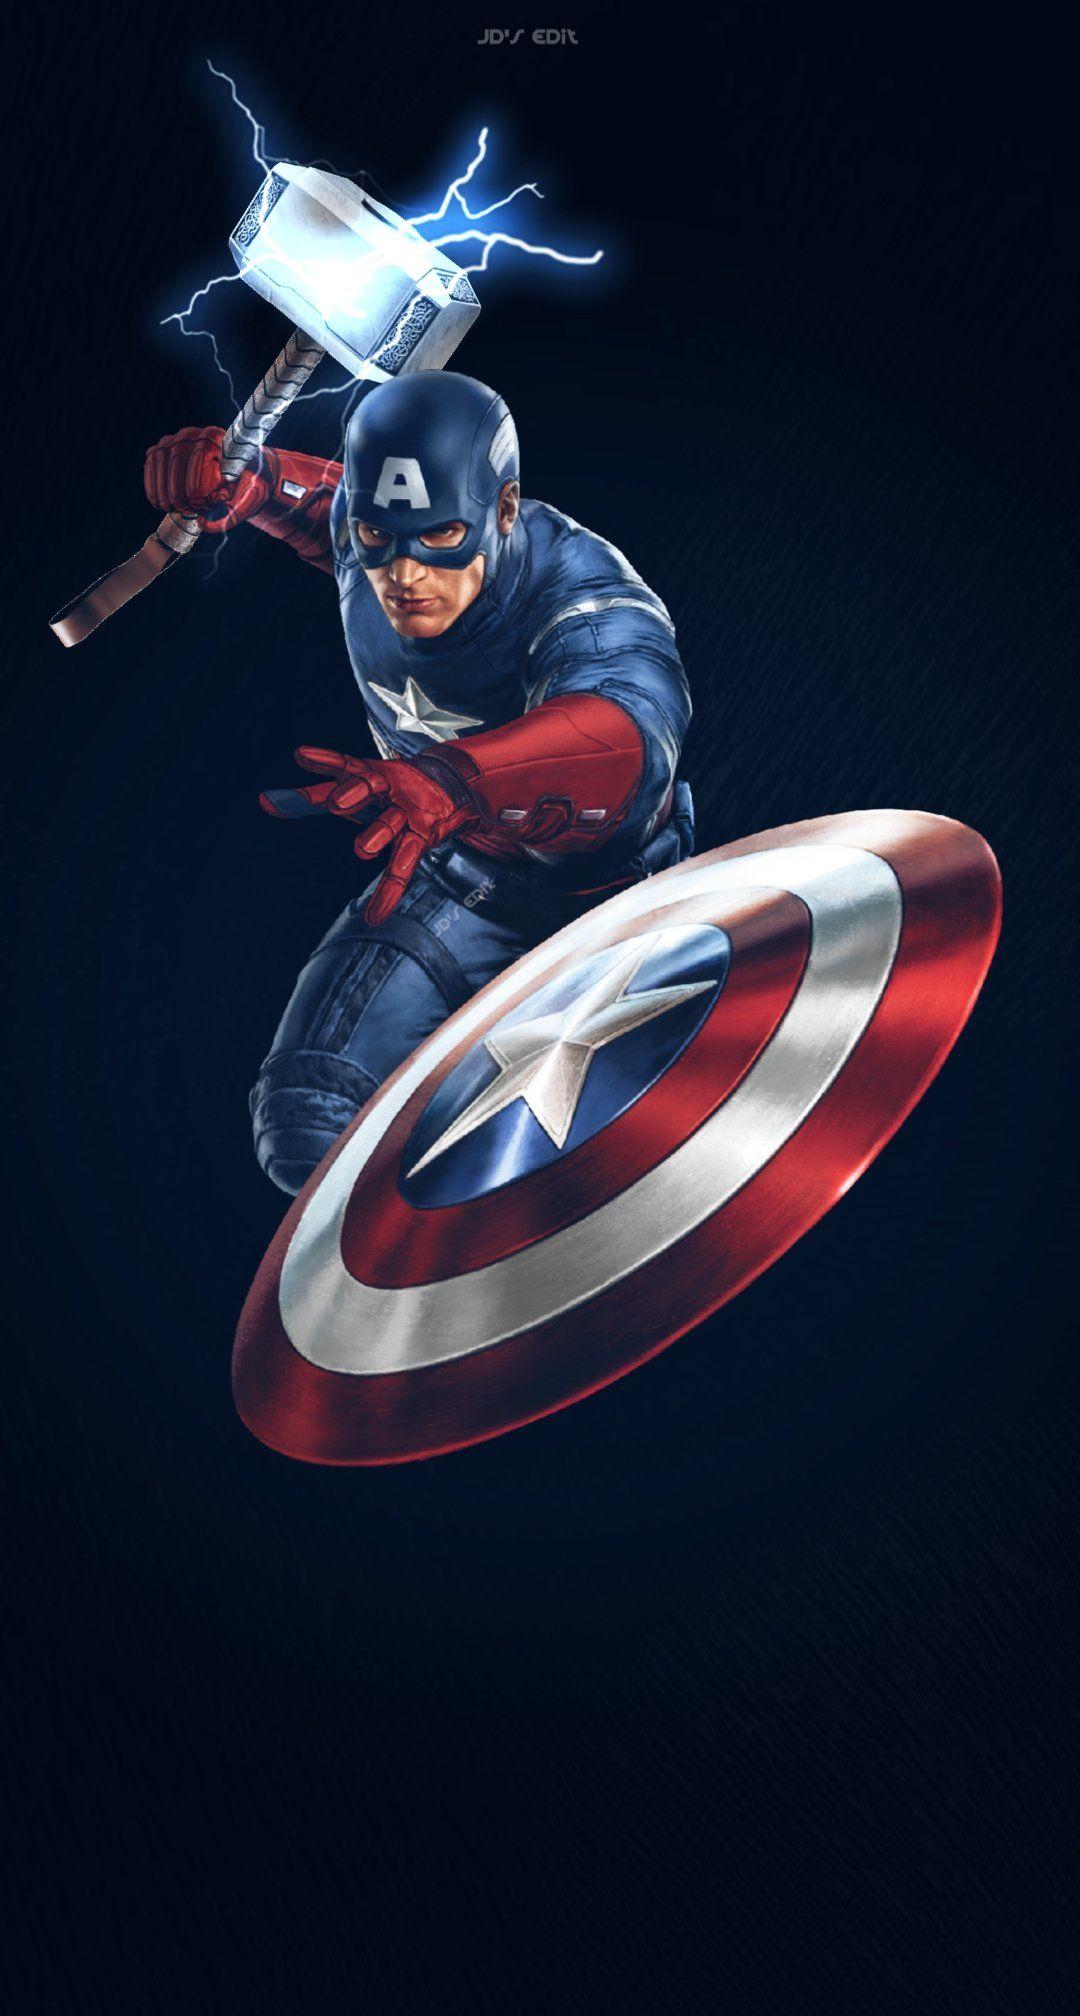 THE RONALDO TOUR on Twitter. Marvel avengers comics, Marvel avengers funny, Captain america wallpaper